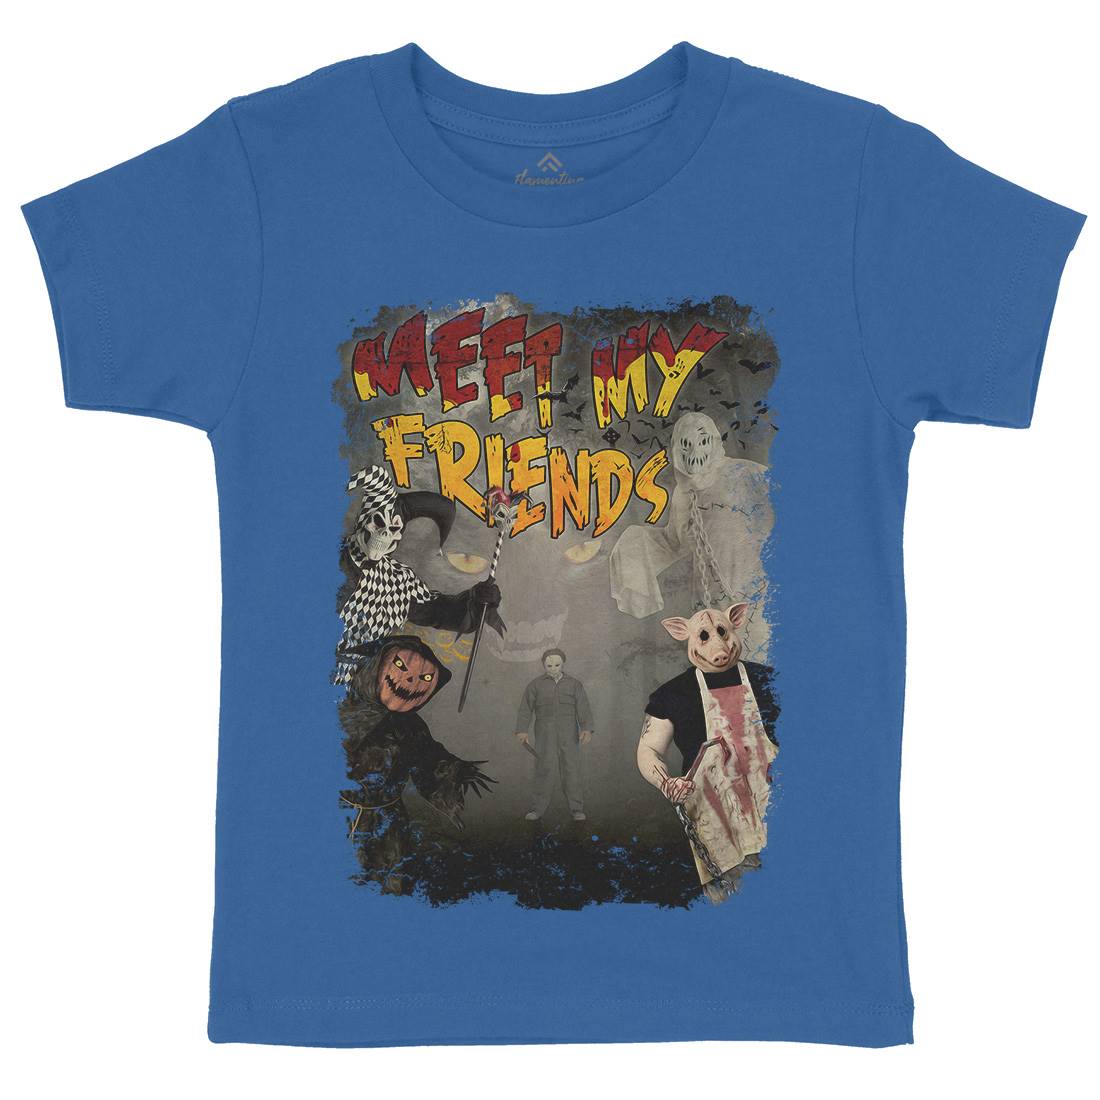 Meet My Friends Kids Organic Crew Neck T-Shirt Horror A875